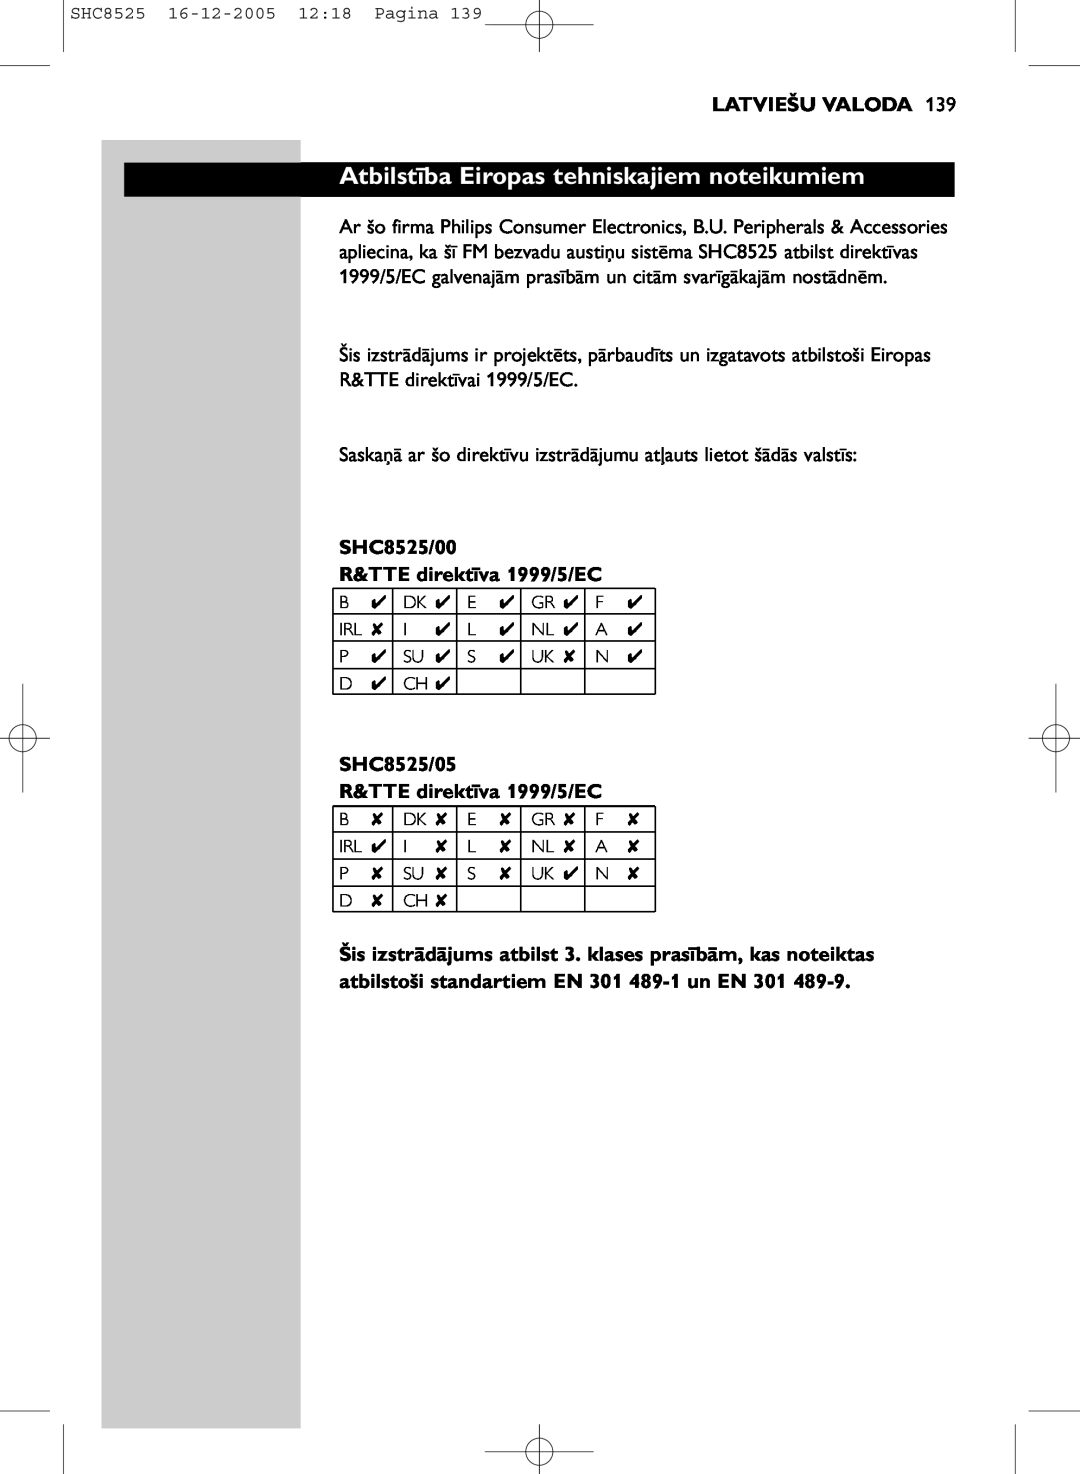 Event electronic SHC8525 manual Atbilstība Eiropas tehniskajiem noteikumiem, Latviešu Valoda 